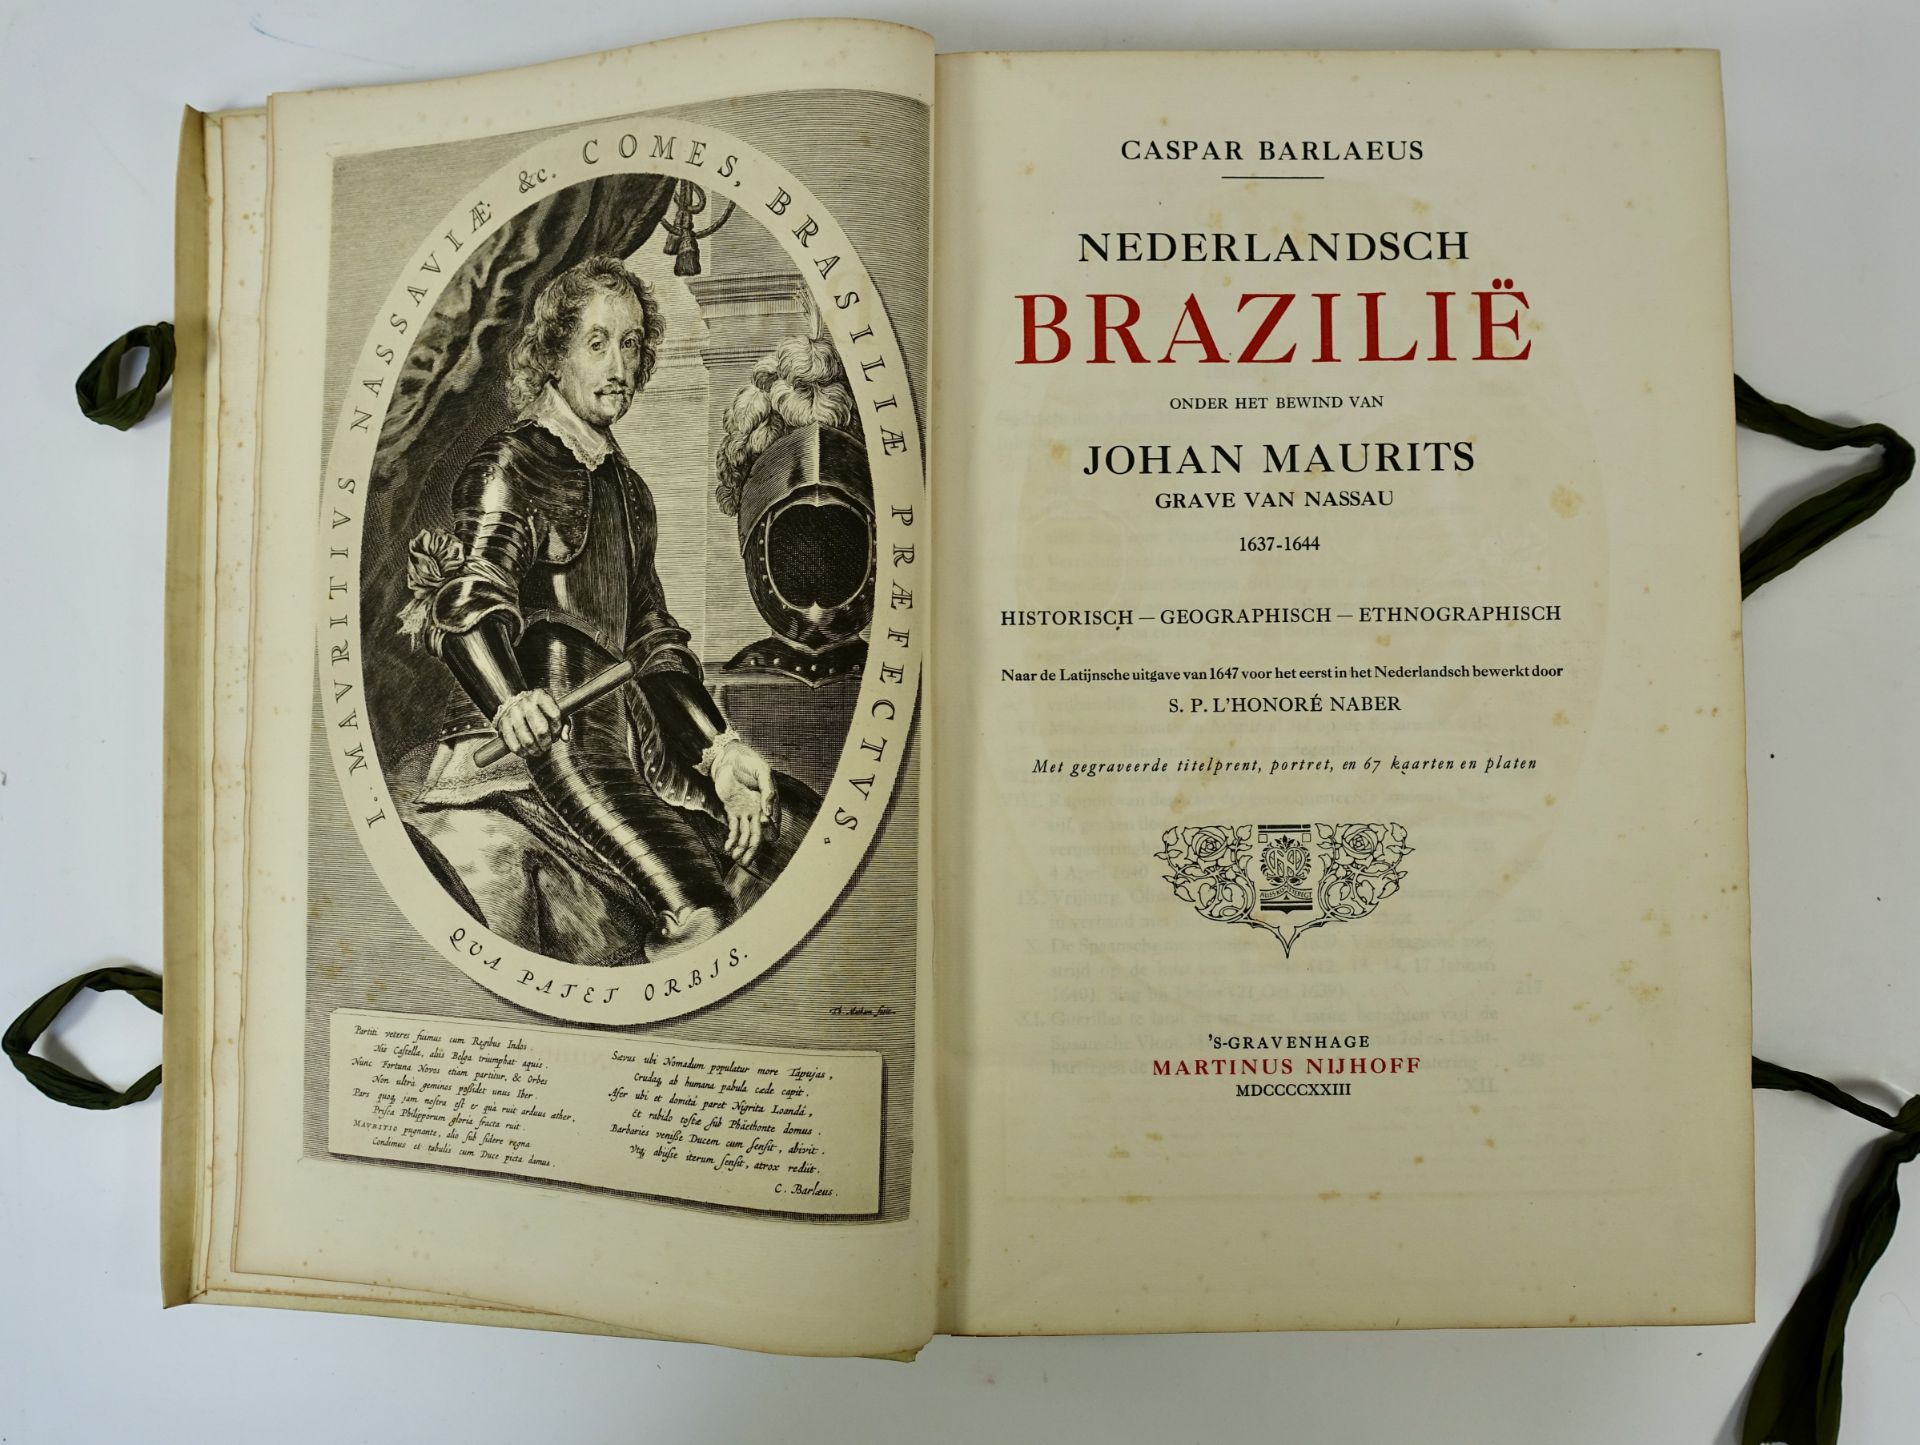 BRAZIL -- BARLAEUS, C. Nederlandsch Brazilië onder het bewind v. Johan Maurits, Grave - Image 2 of 2